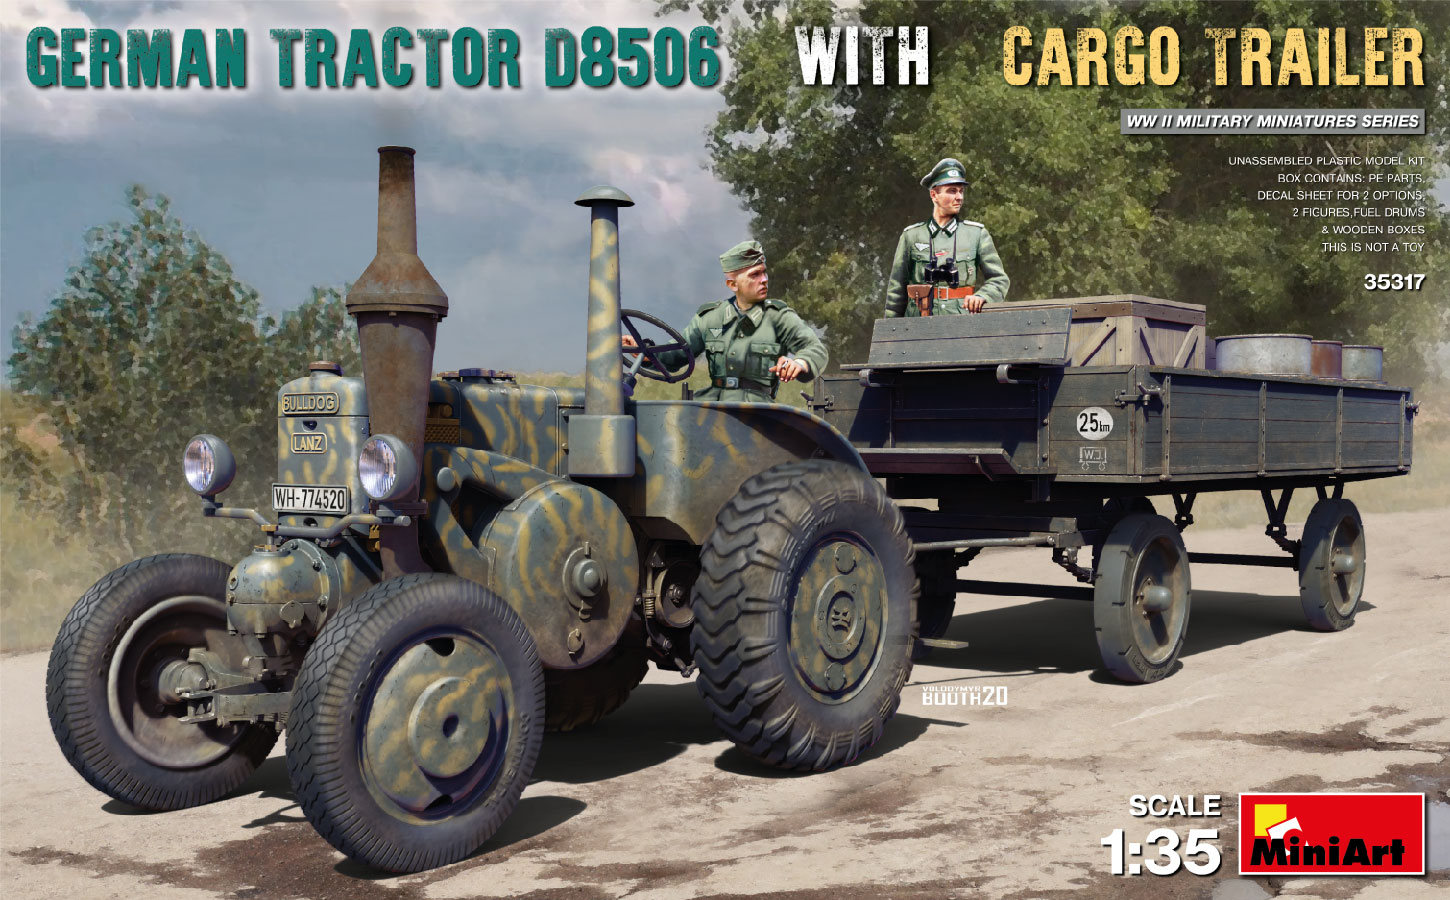 35317  техника и вооружение  GERMAN TRACTOR D8506 WITH CARGO TRAILER  (1:35)